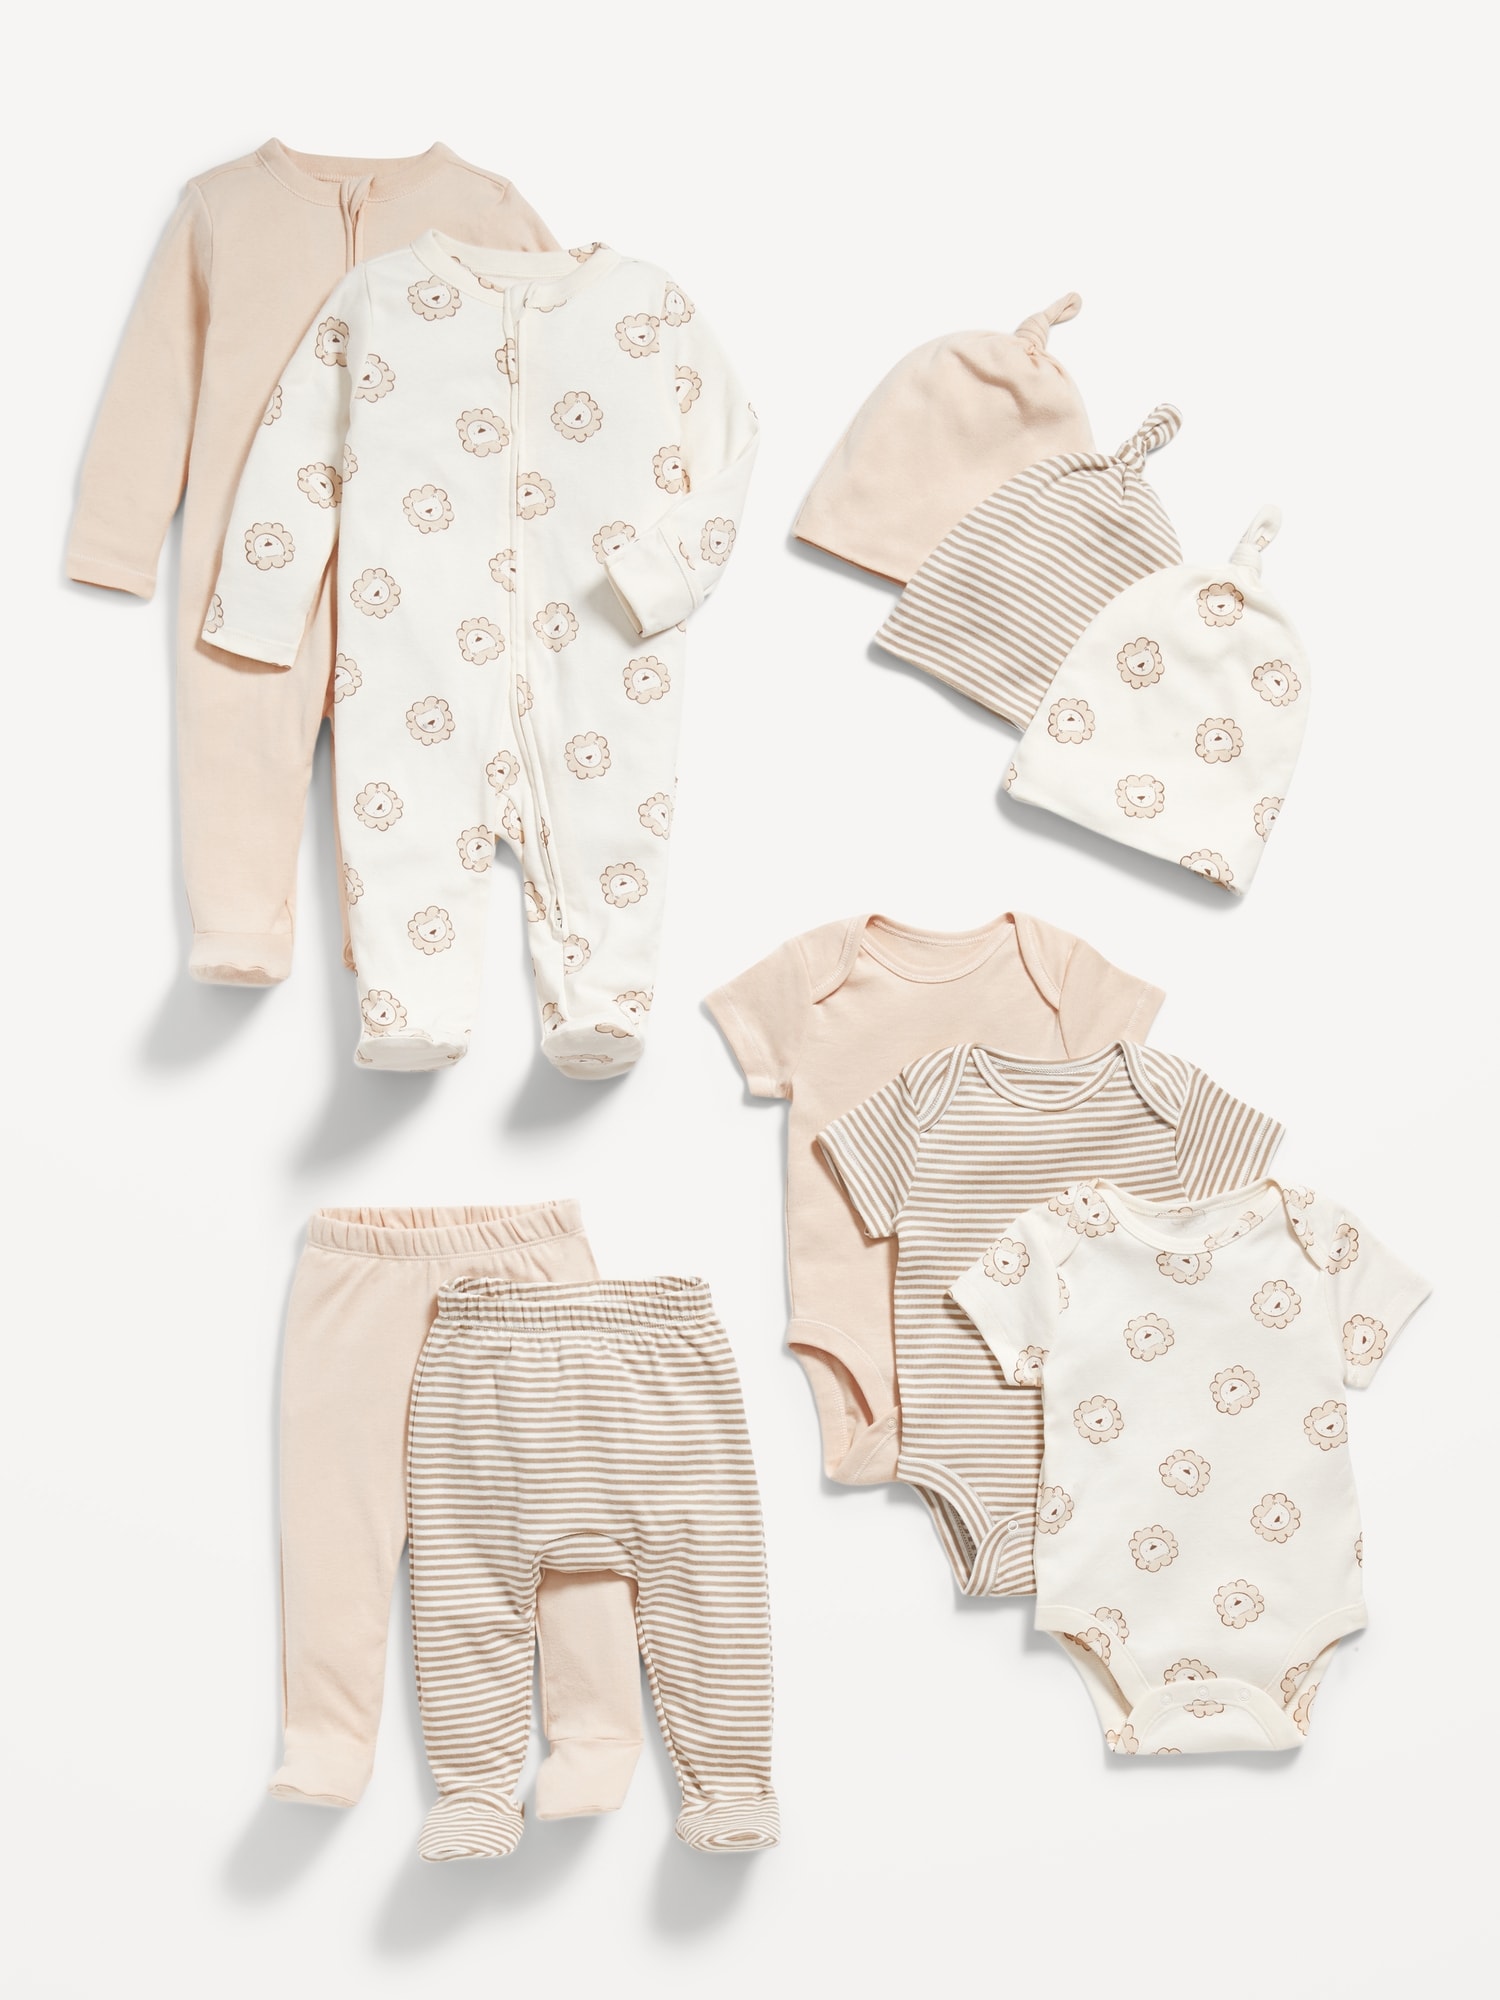  Baby Clothing - Miyanuby / Baby Clothing / Baby Clothing &  Shoes: Fashion